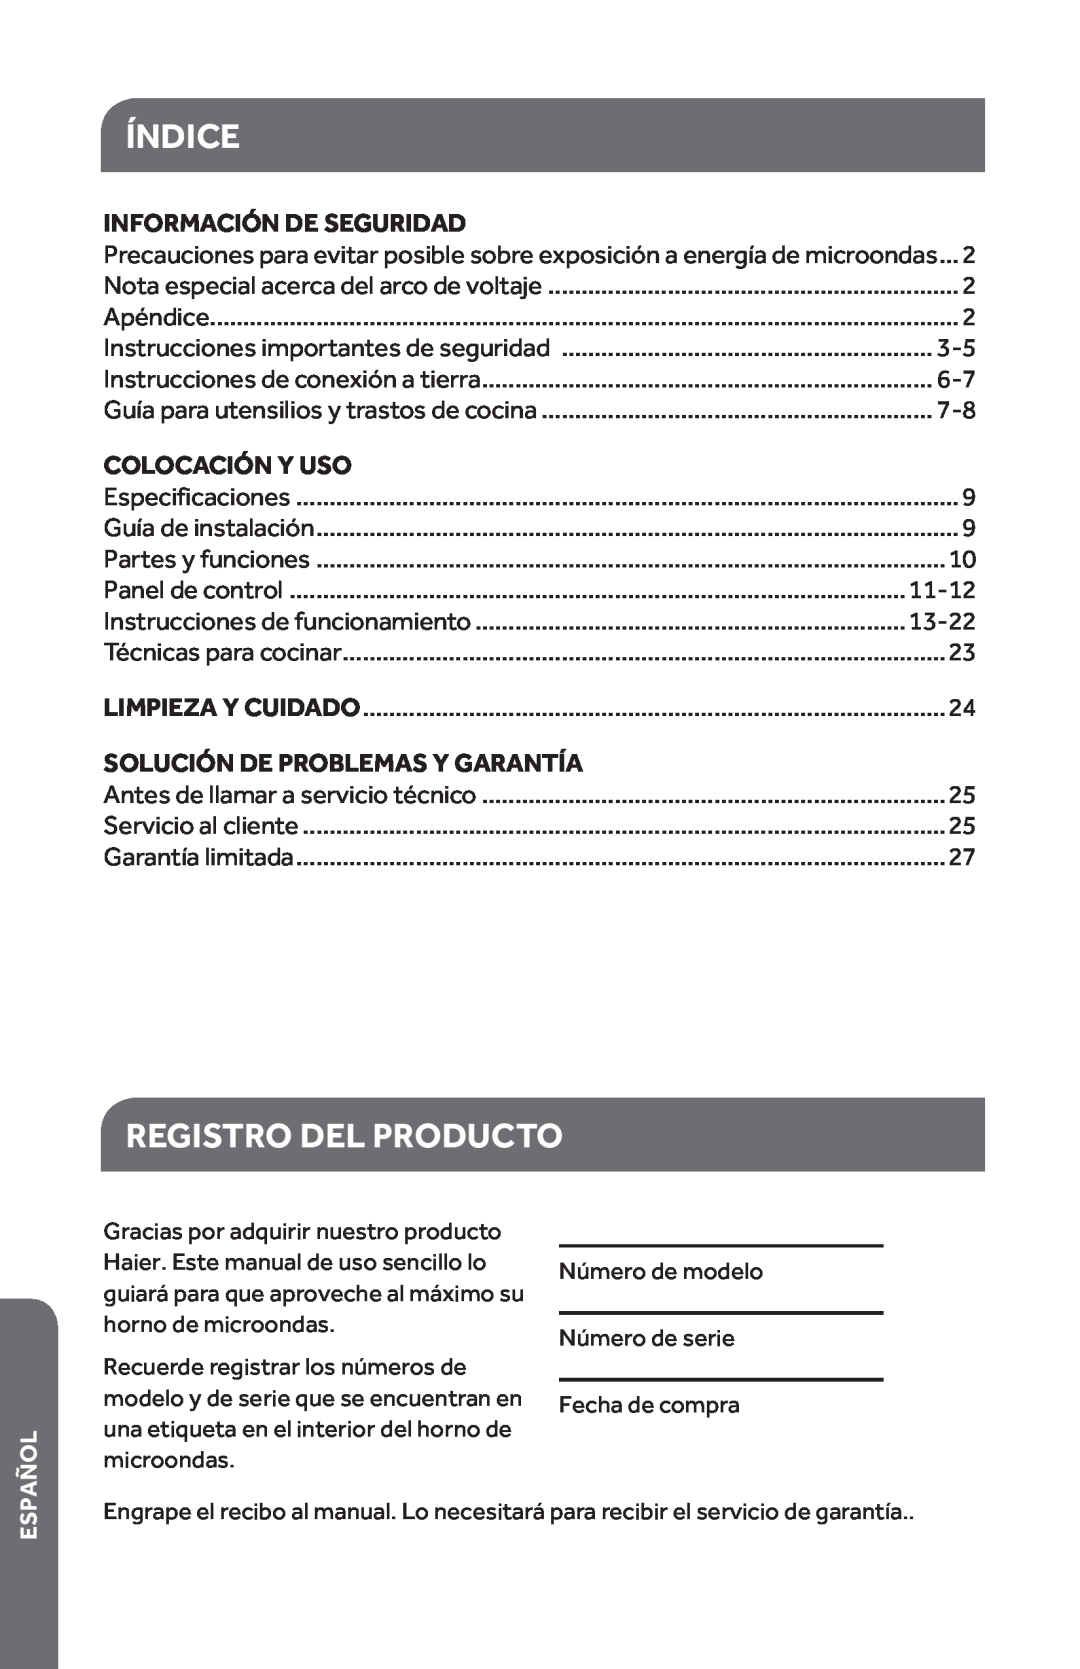 Haier HMC1285SESS Índice, Registro Del Producto, Información De Seguridad, Colocación Y Uso, 11-12, 13-22, Español 